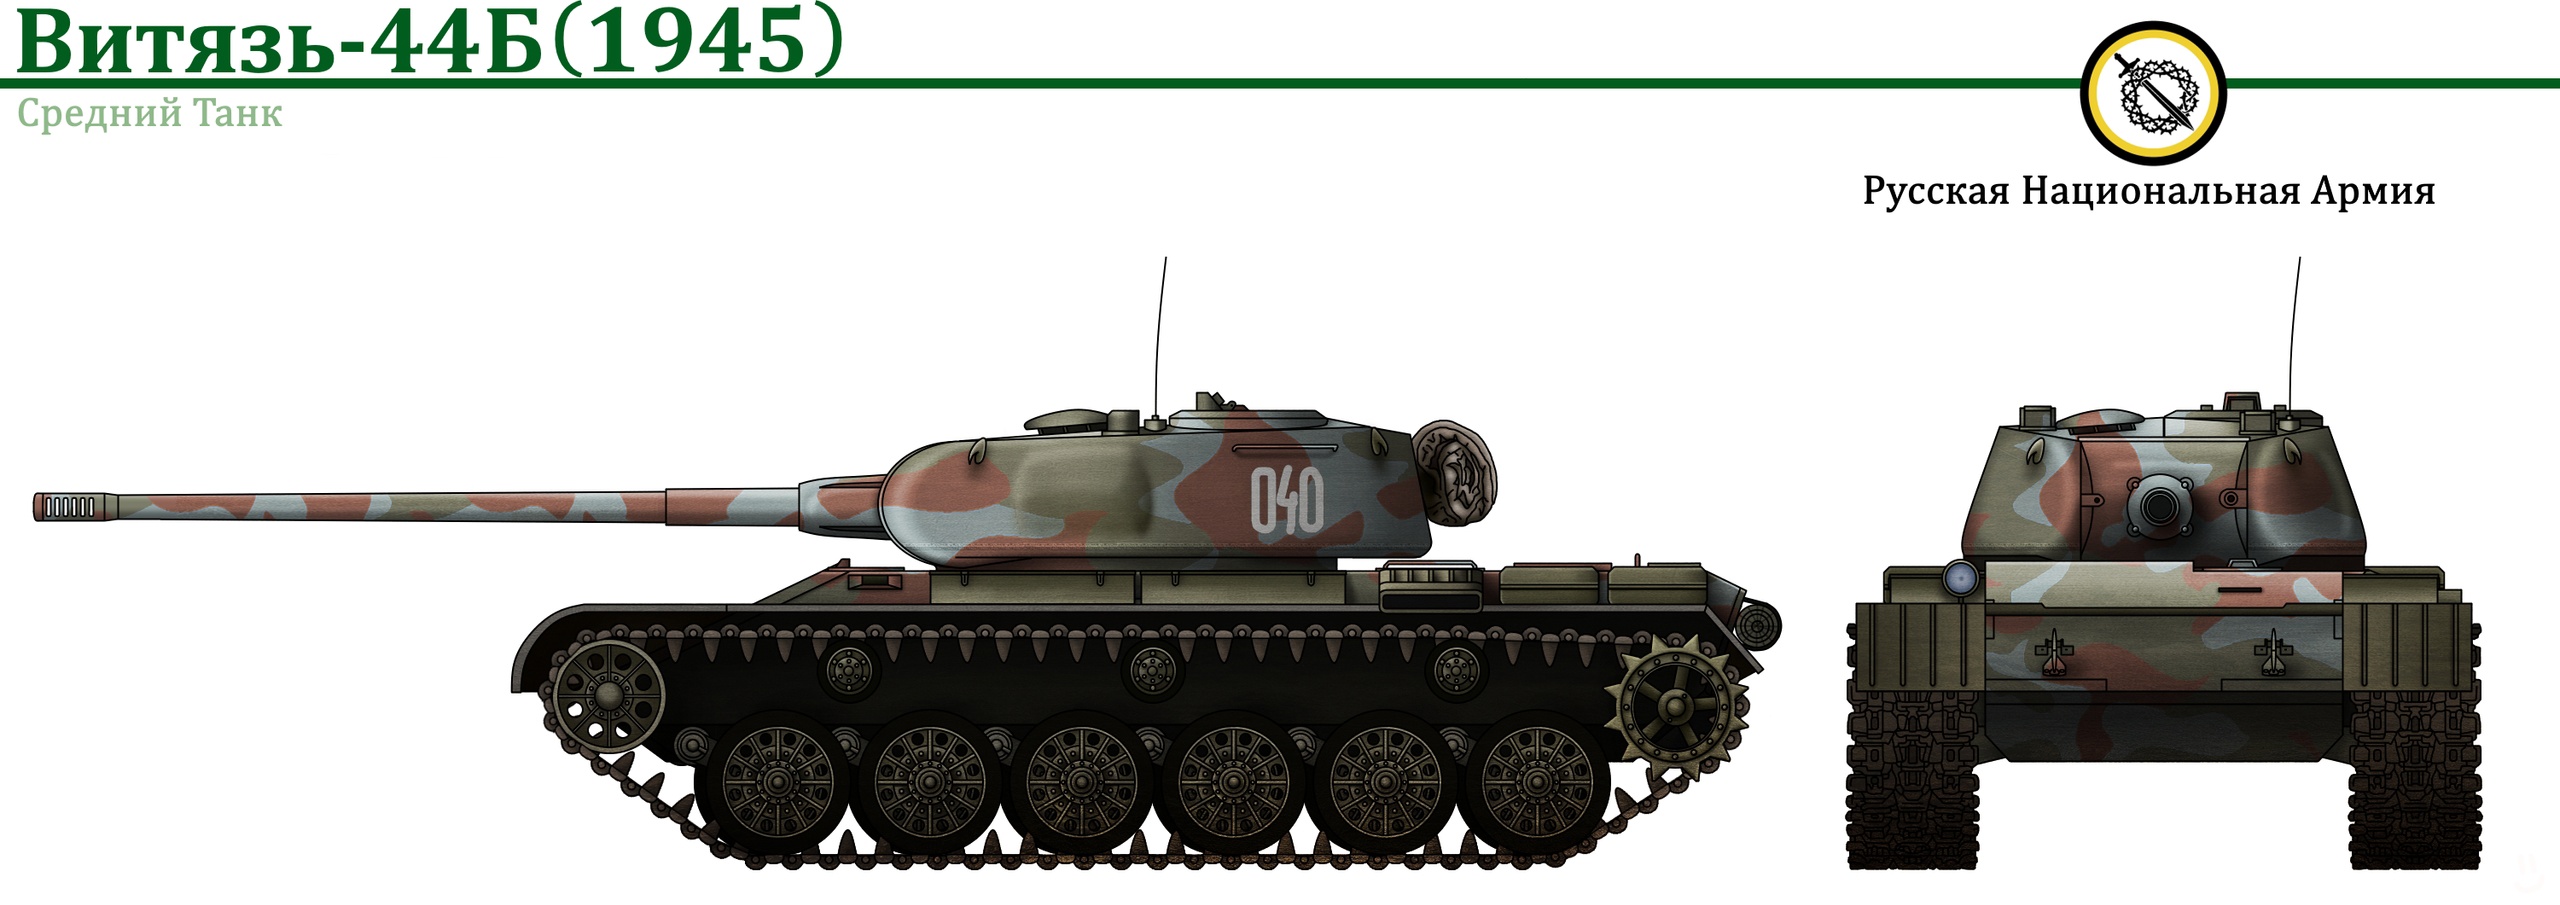 Рысь-43 и Объект 644. История развития среднего танка России из Vladkov Conspiracy Theory